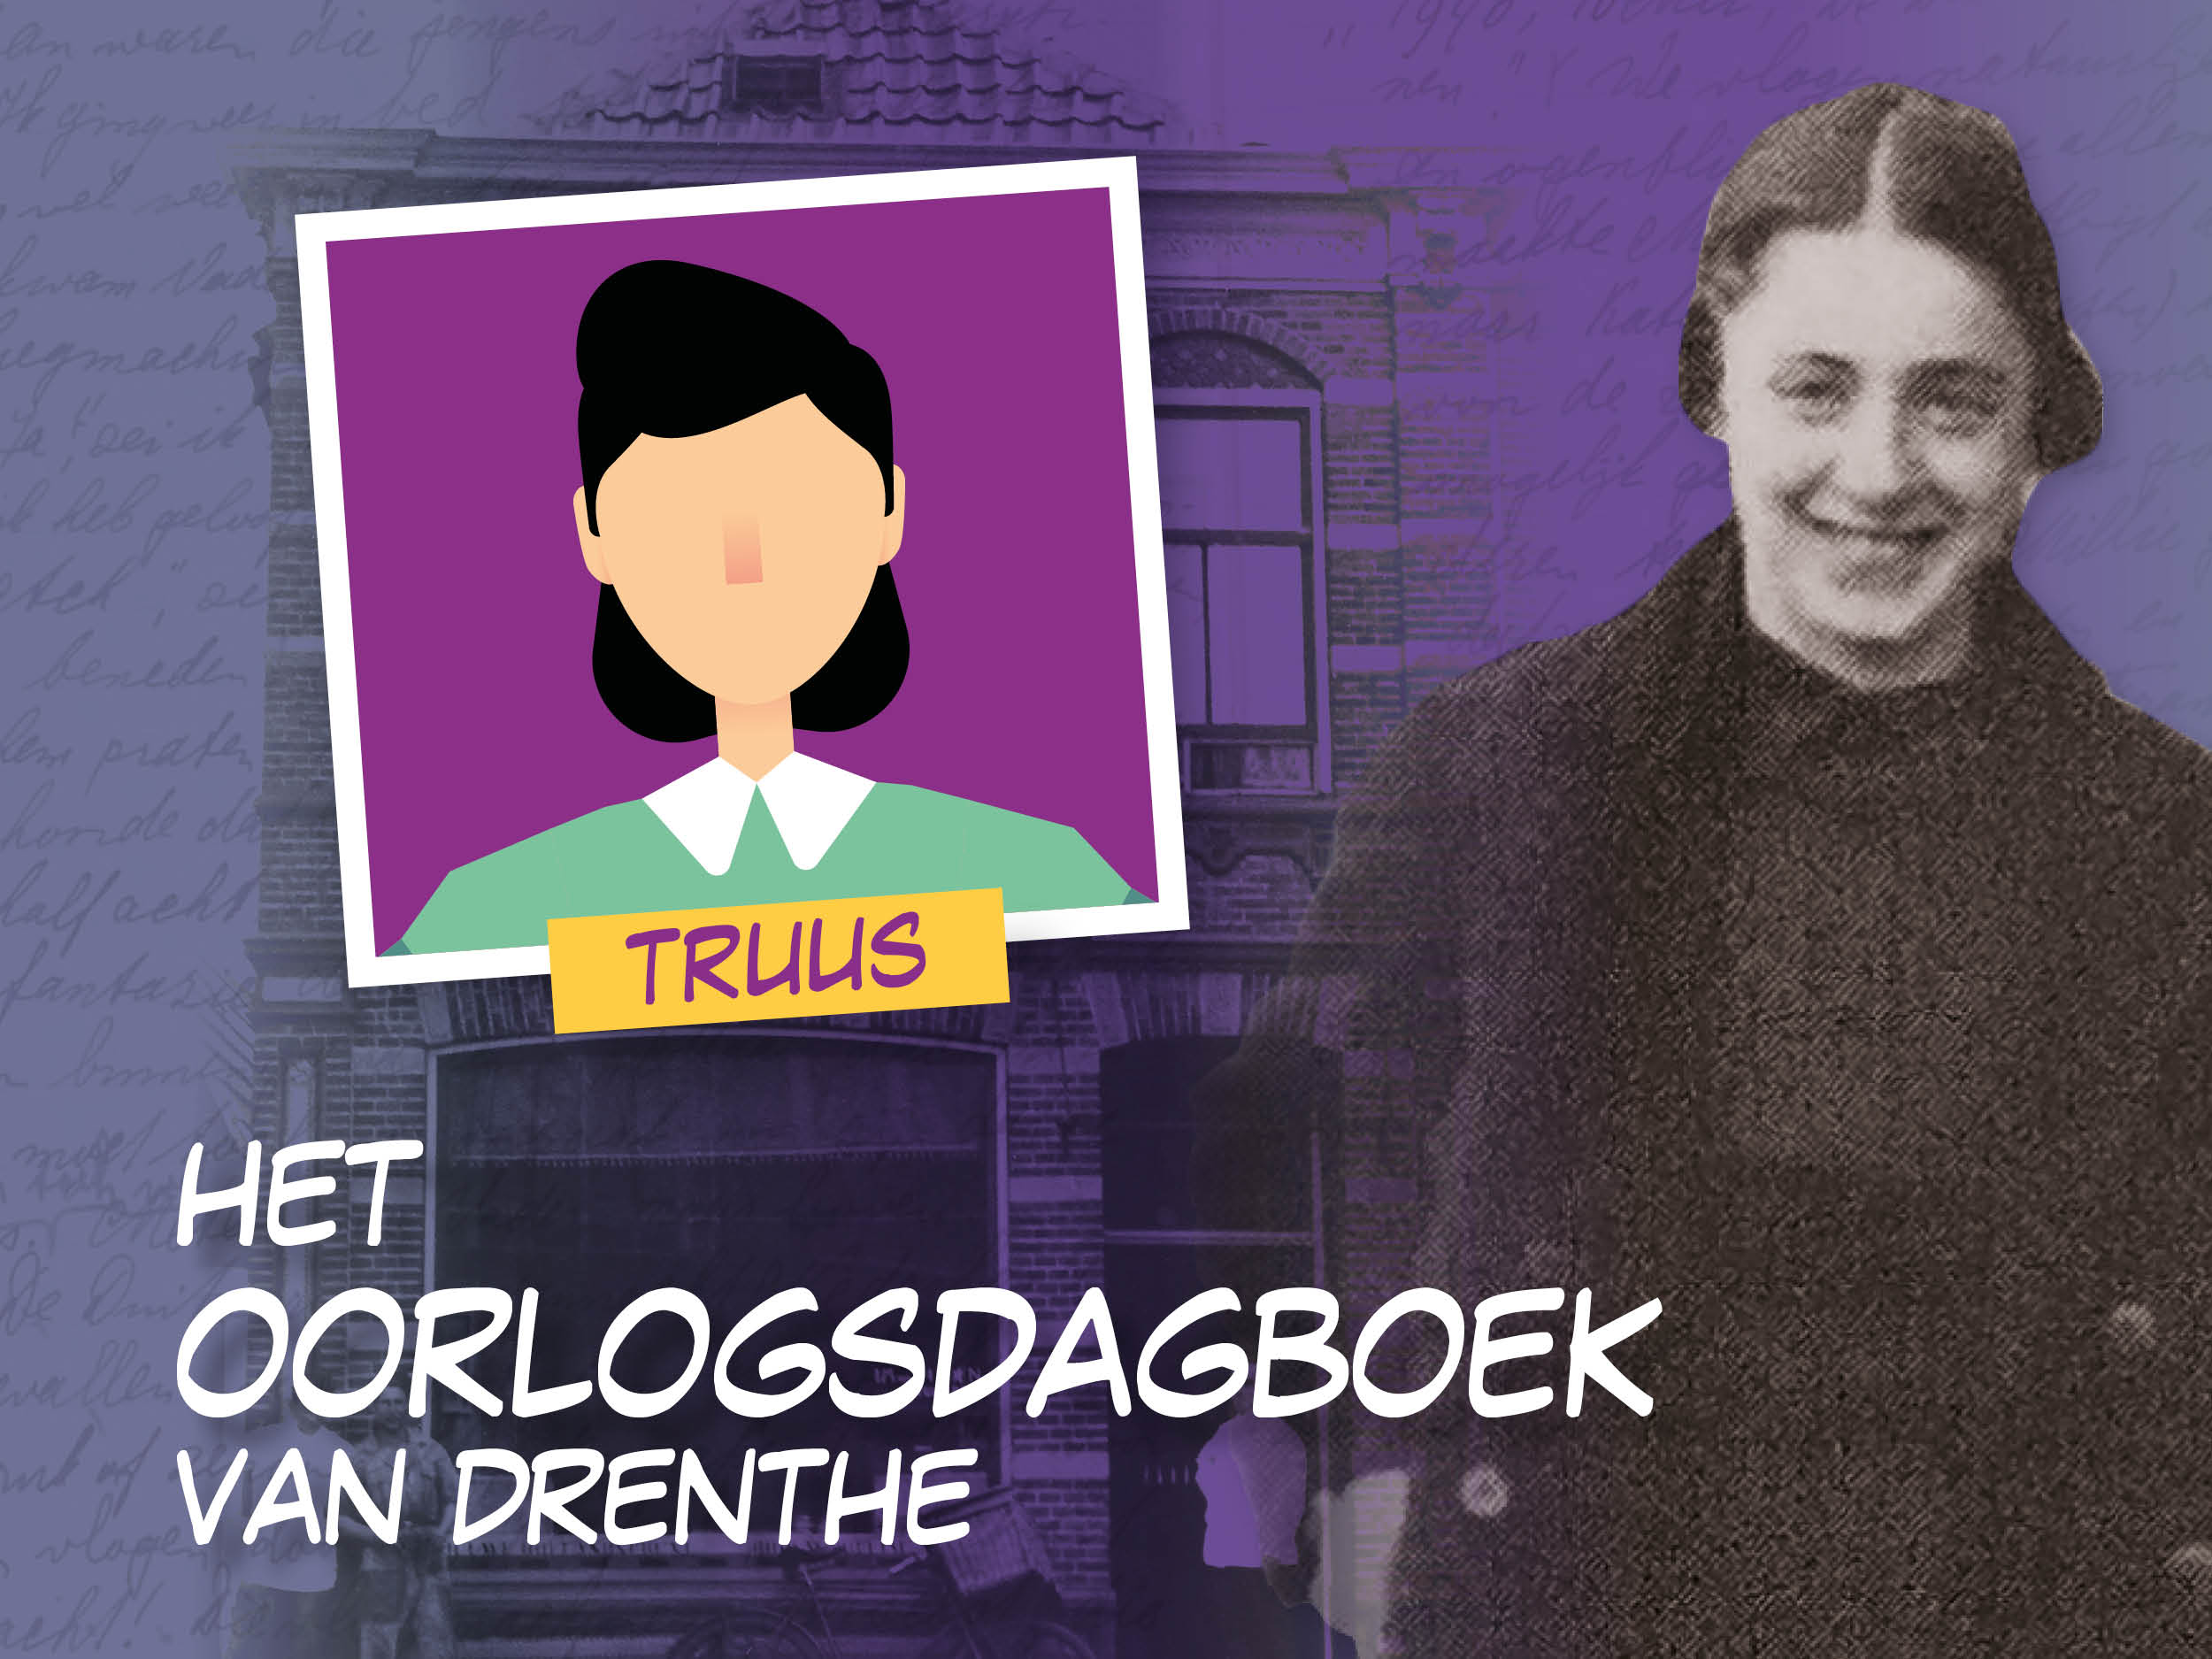 29-06: Antje Buursma-Backx (95), bekend van Oorlogsdagboek van Drenthe, overleden